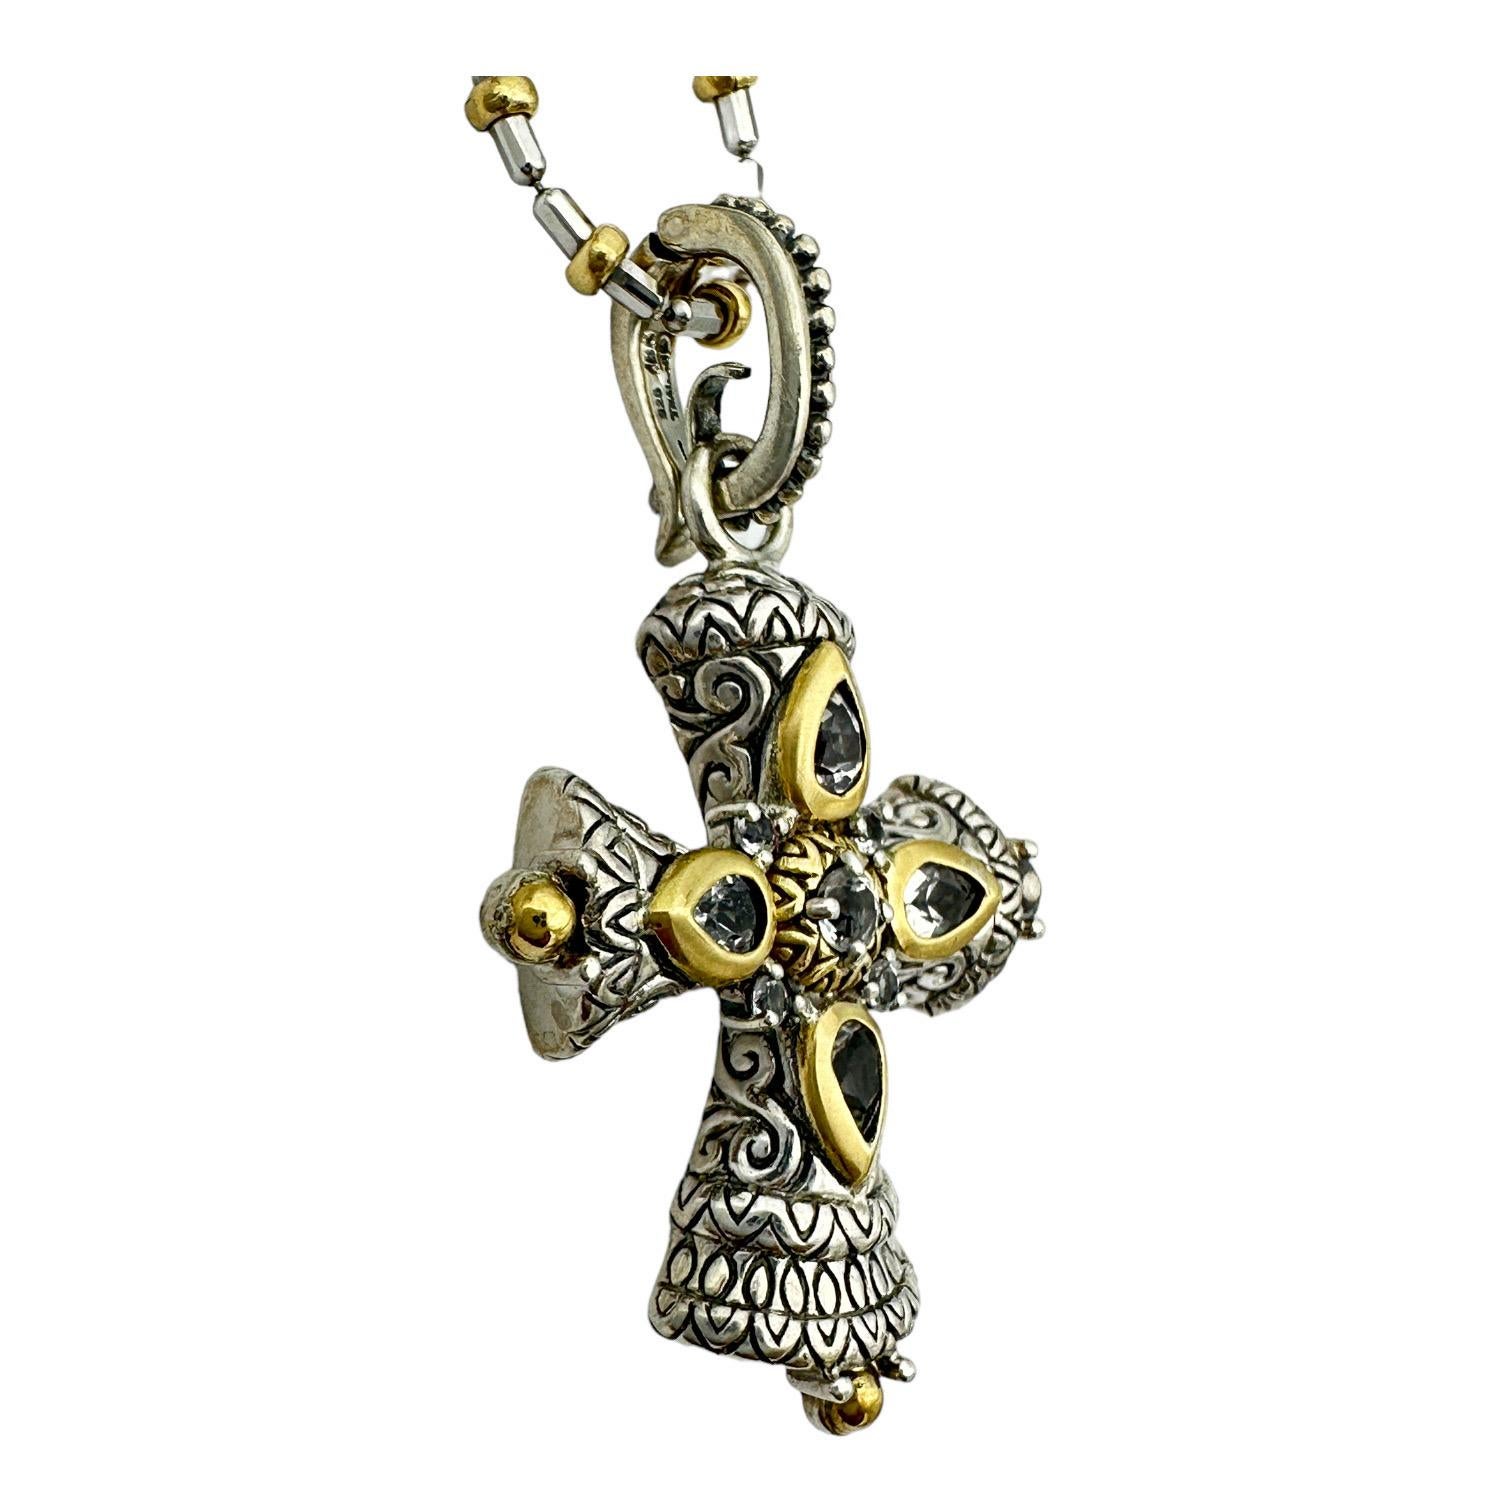  Dieses zweifarbige 18-Karat-Kreuz ist mit einem byzantinischen Kreuz verziert und verleiht Ihnen einen eleganten Look mit einem klassischen Design. Die Kombination aus Gold- und Silbertönen sorgt für einen atemberaubenden Effekt, der sich sowohl